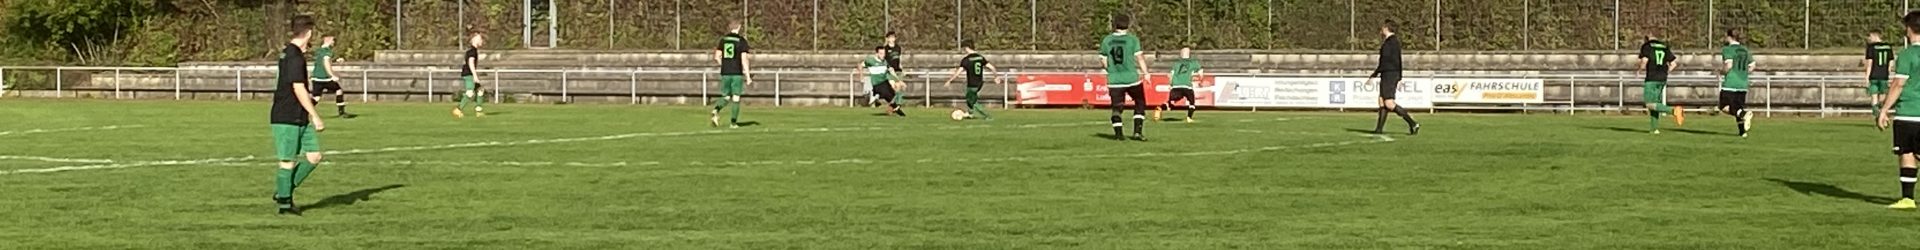 VfL-Fußballer siegen gegen SV Sternenfels mit 8:2